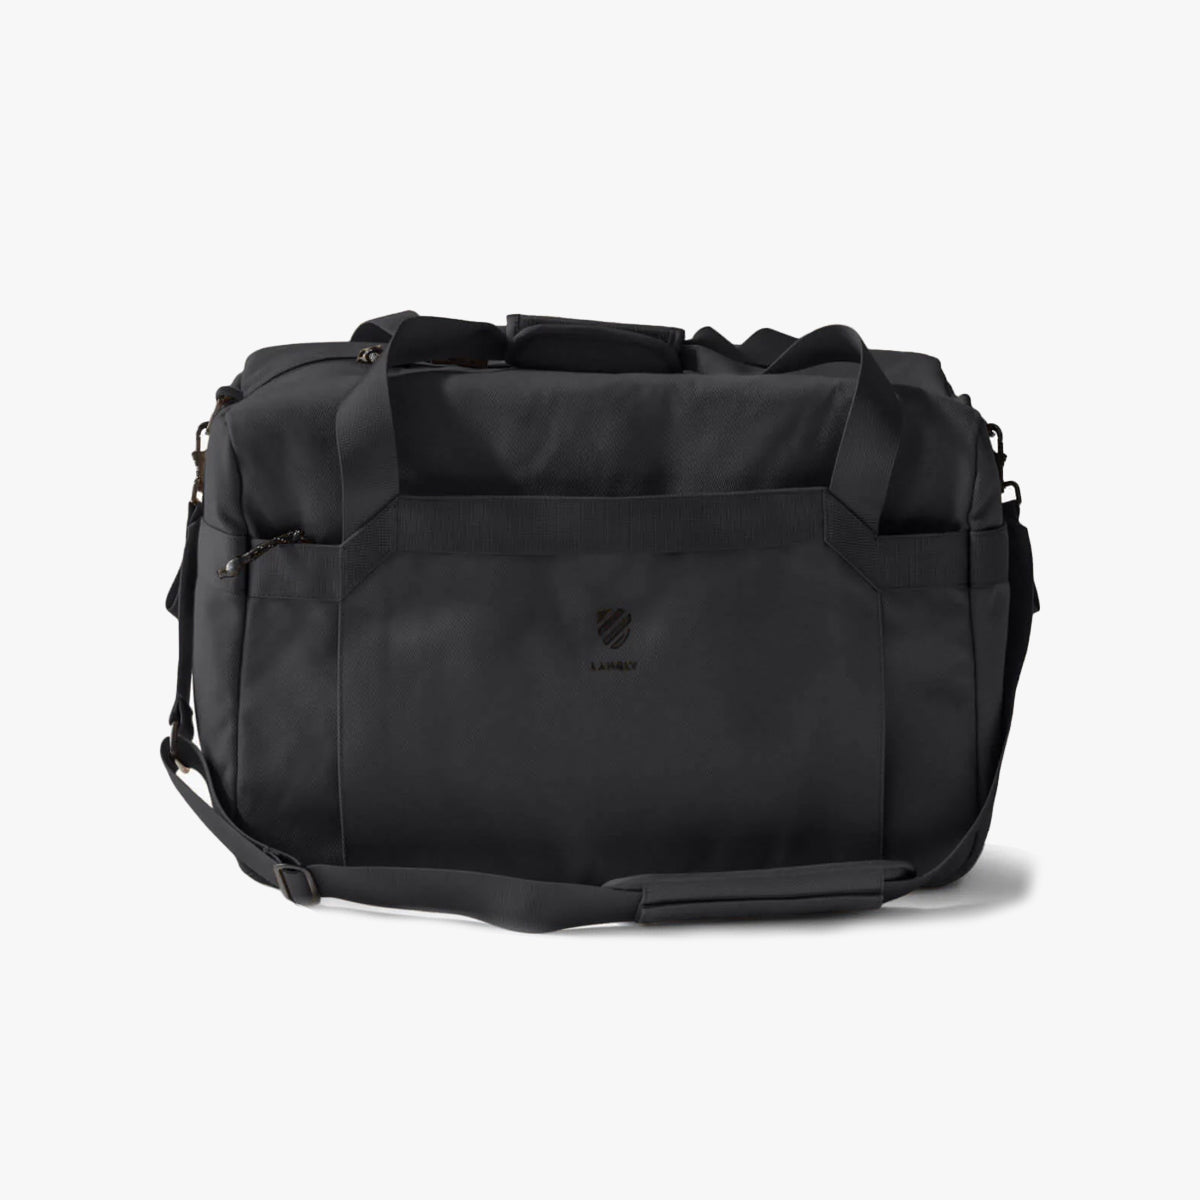 Langly : Weekender Duffle Bag : Black